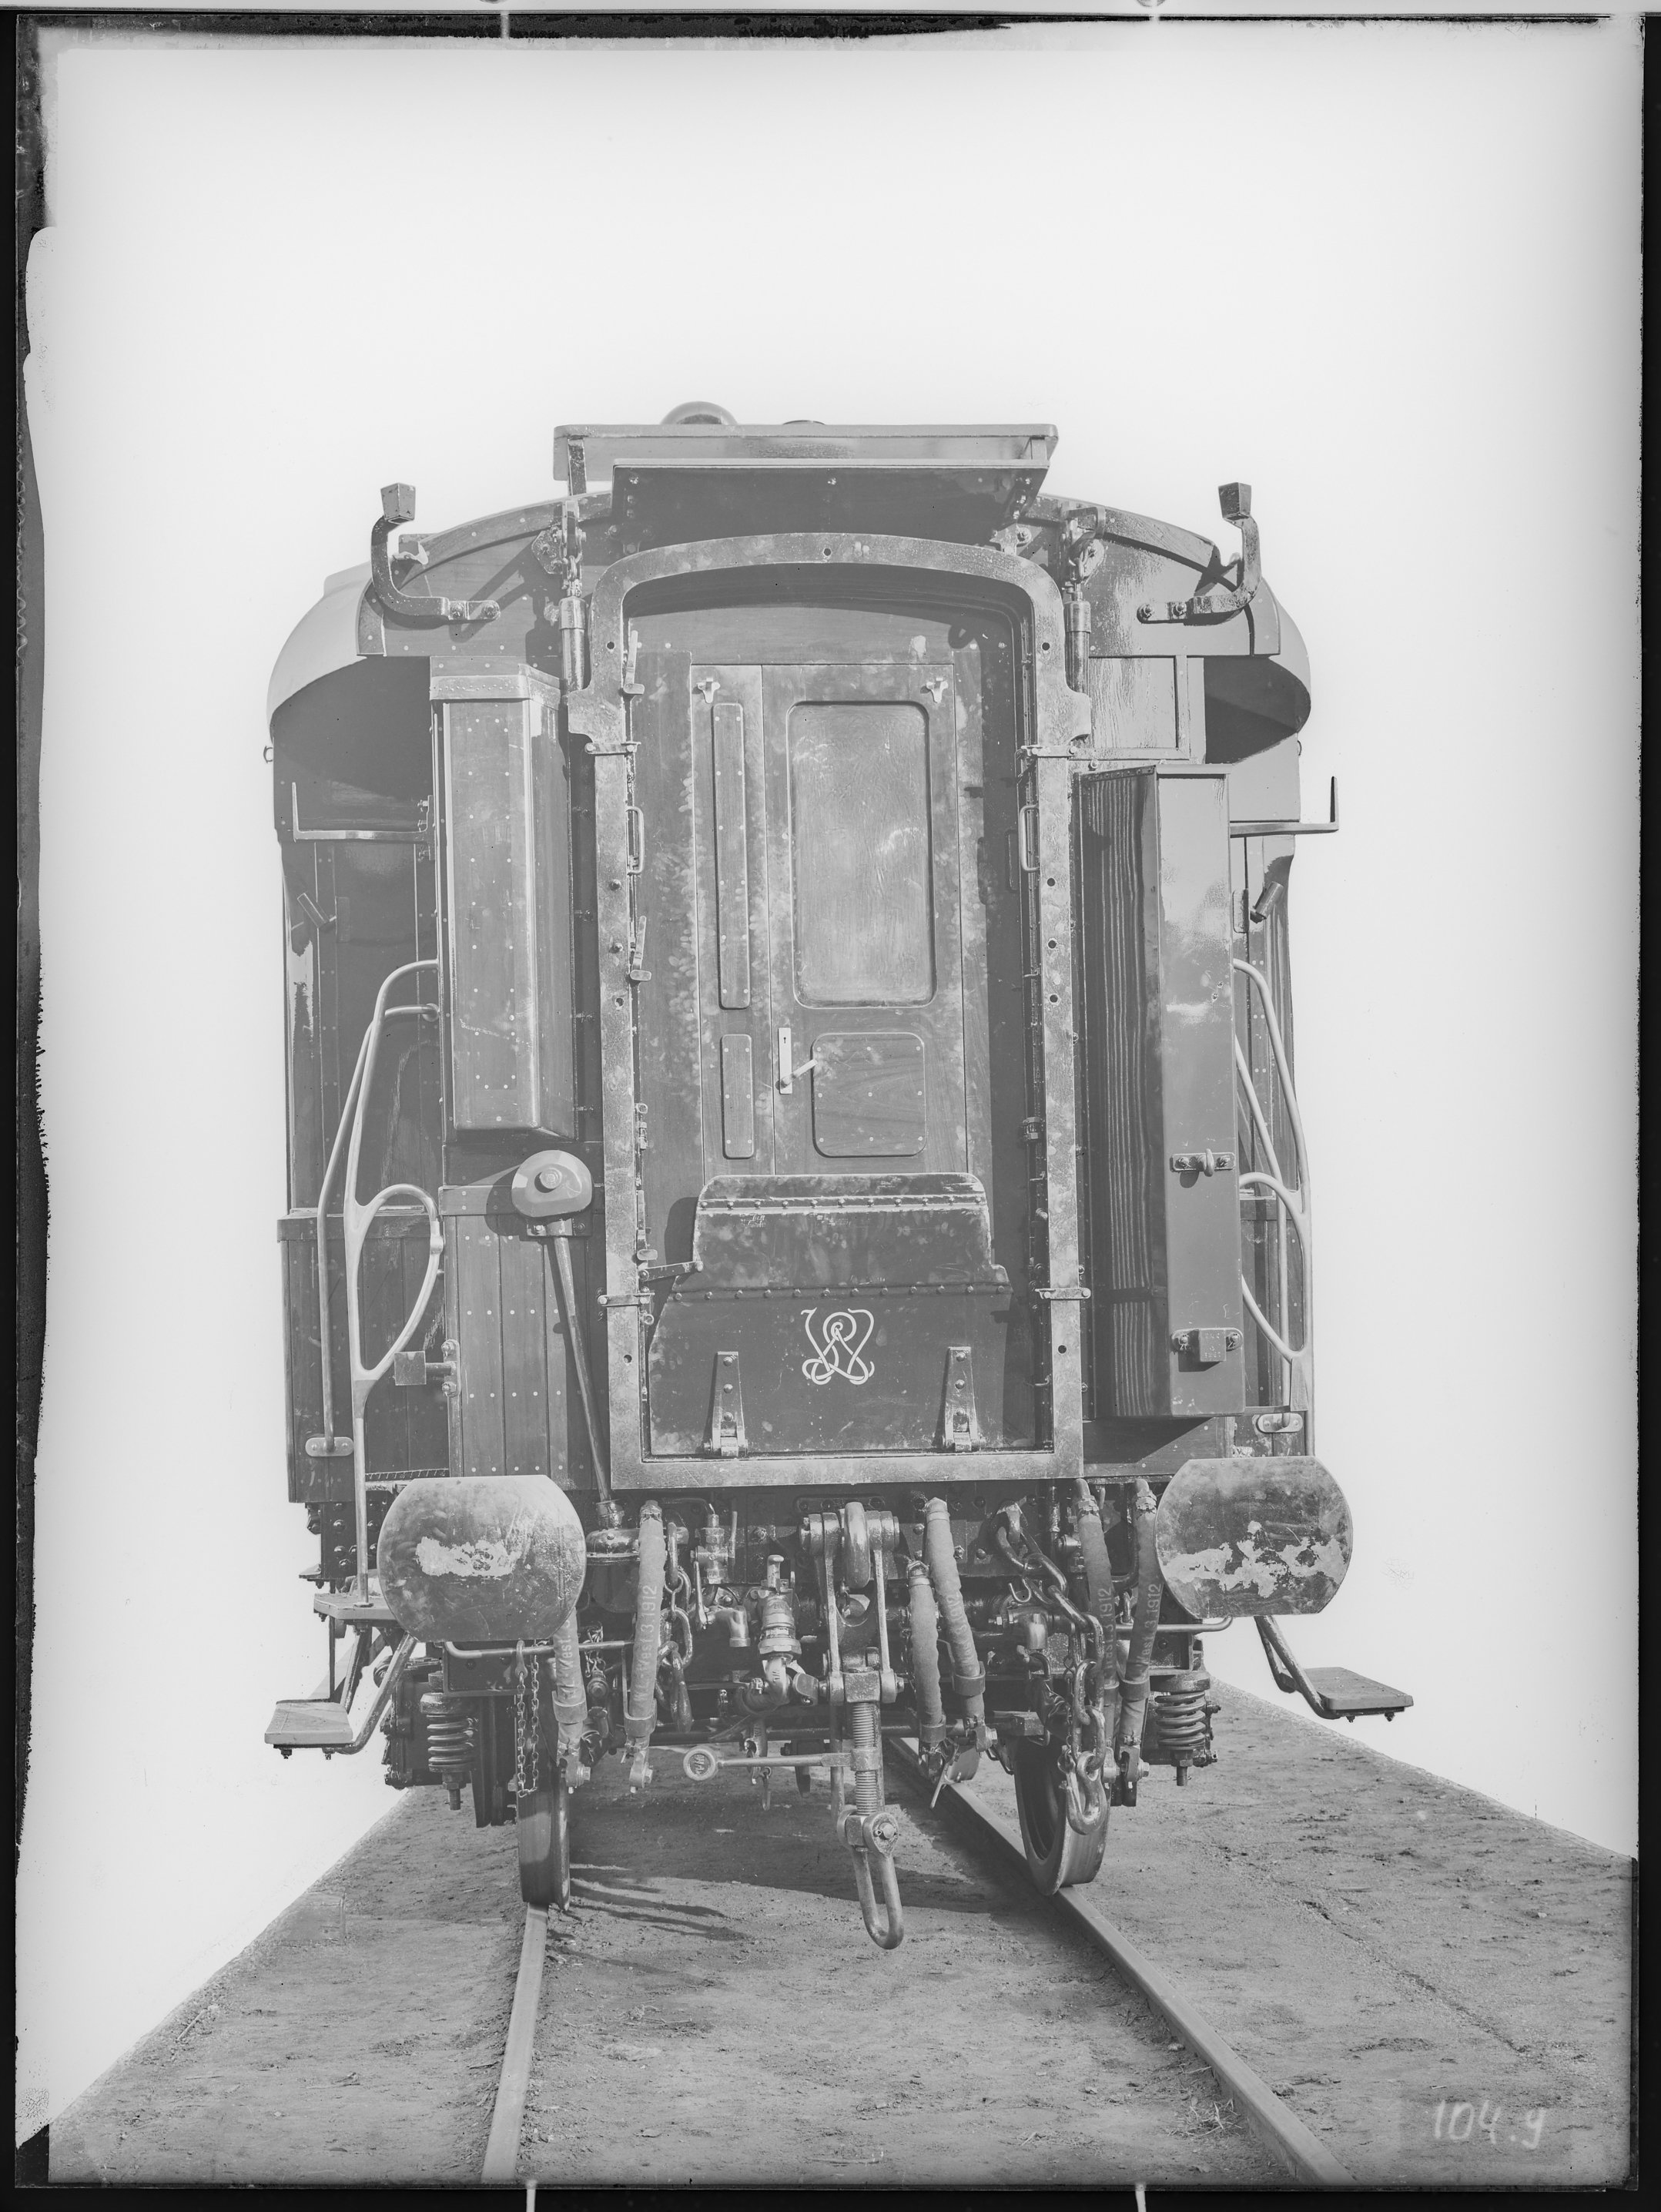 Fotografie: Schlafwagen (Stirnansicht), 1914? Internationale Schlafwagen-Gesellschaft (Compagnie Internationale des Wagons-Lits - CIWL)? (Verkehrsmuseum Dresden CC BY-NC-SA)